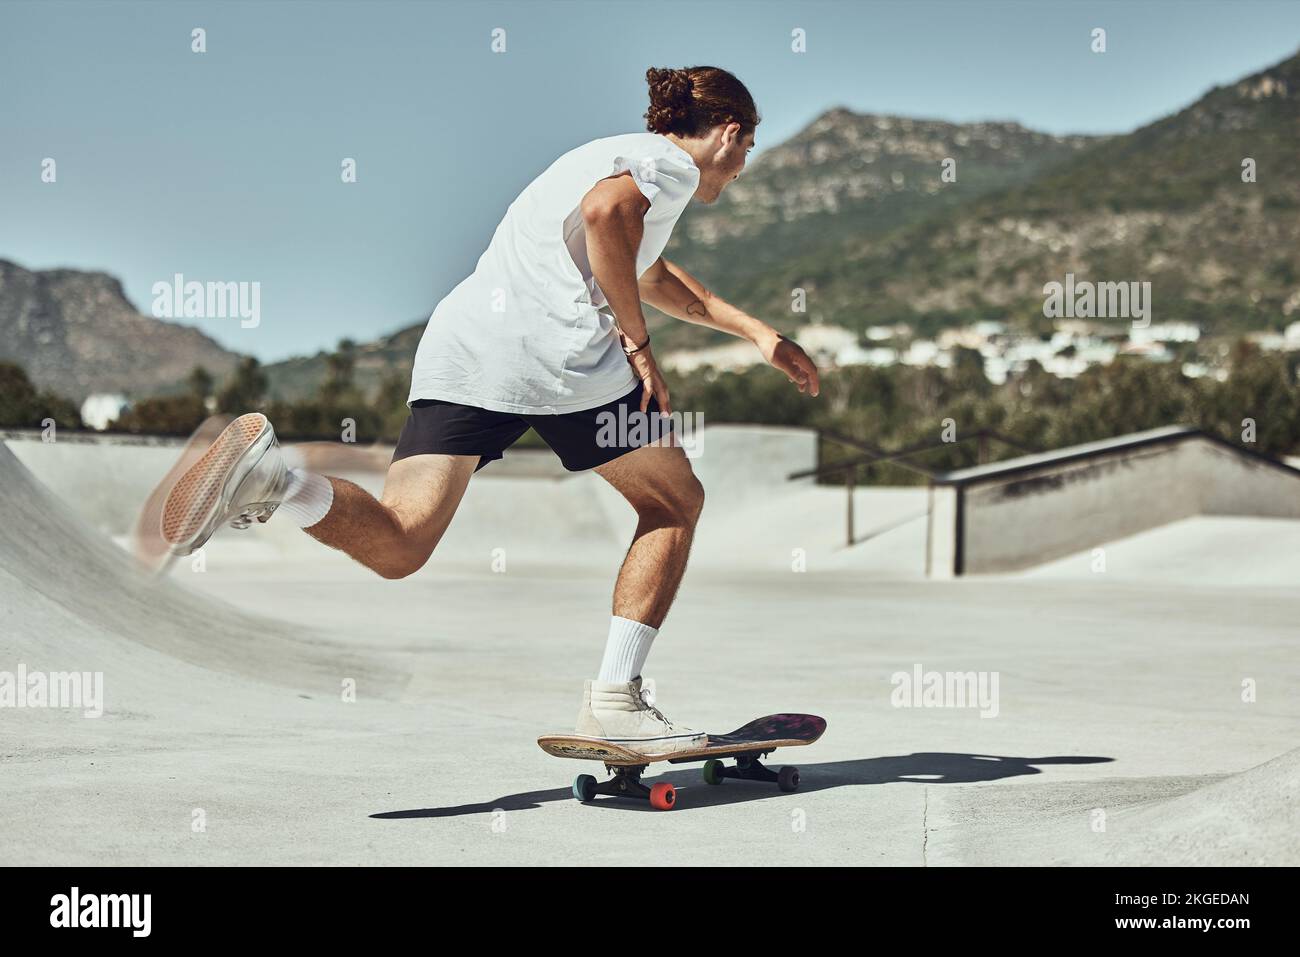 Patinaje, hombre joven y skateboard en skate park en ciudad urbana, fitness o entrenamiento para afición de moda. Juventud, patinadora y actividad física en concreto Foto de stock